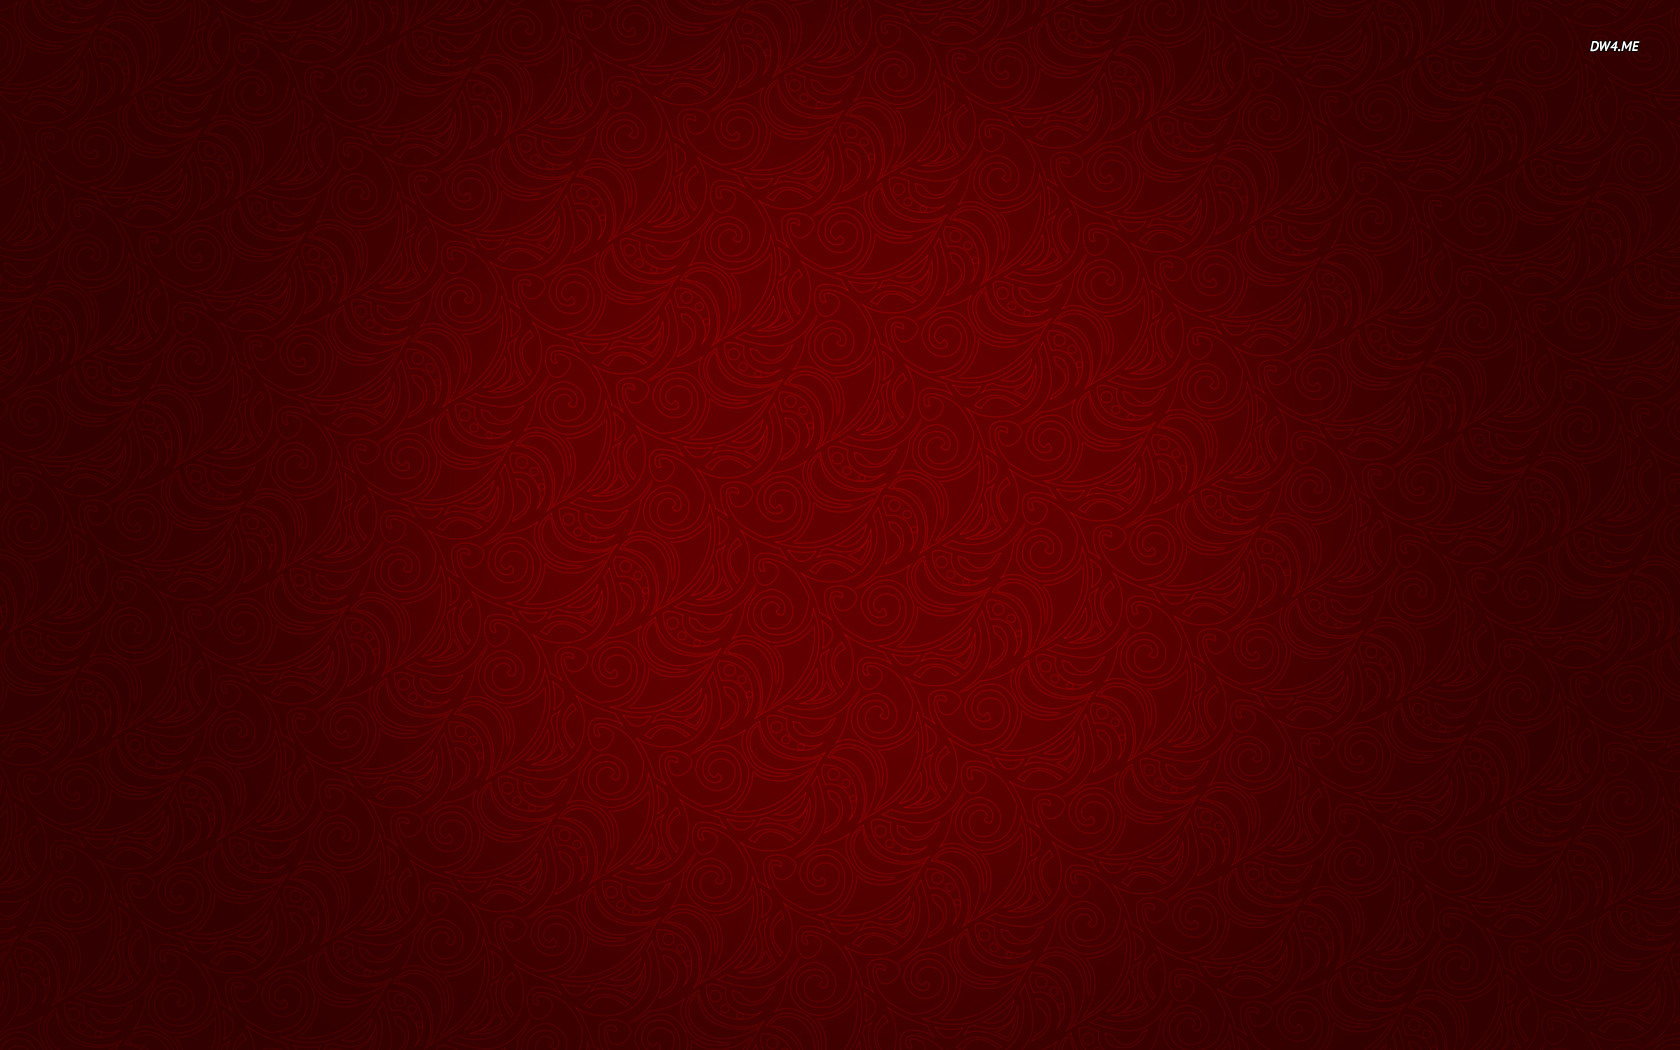 Red Swirl Pattern Wallpaper Digital Art